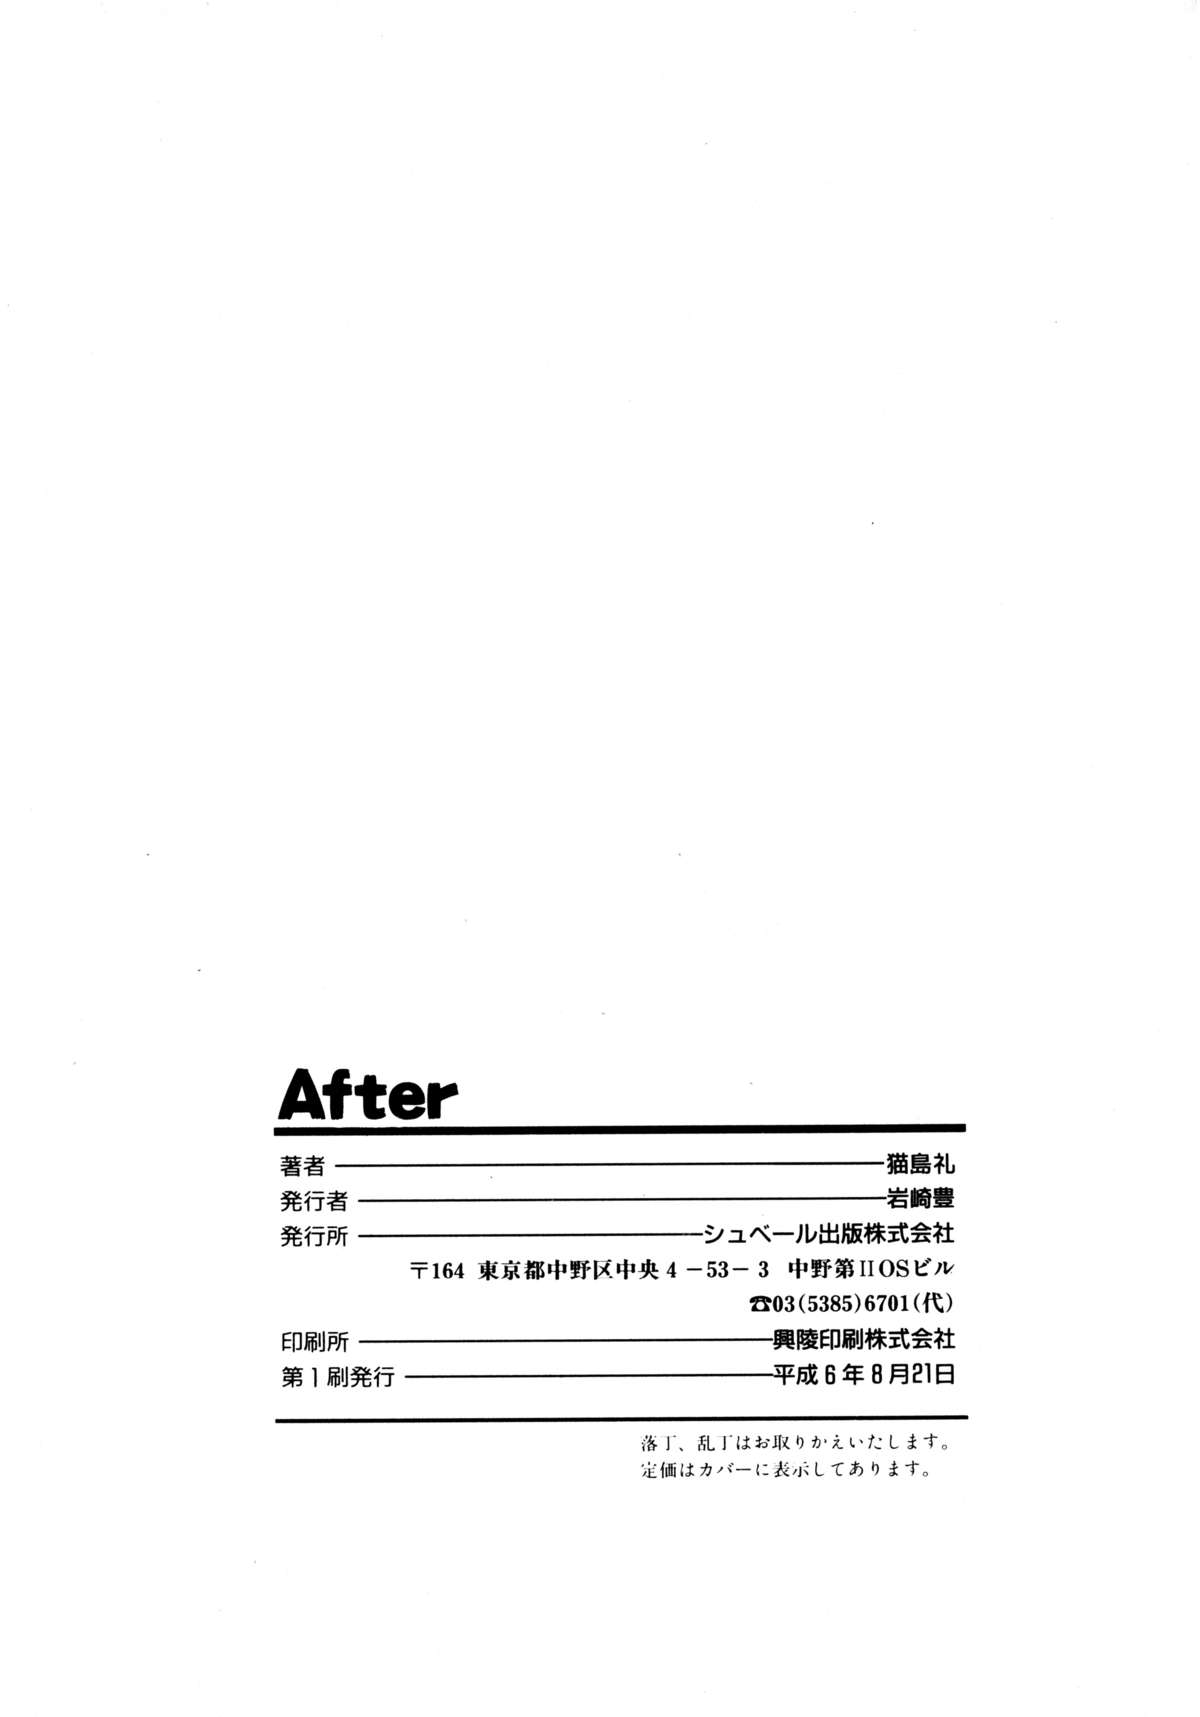 [猫島礼] After